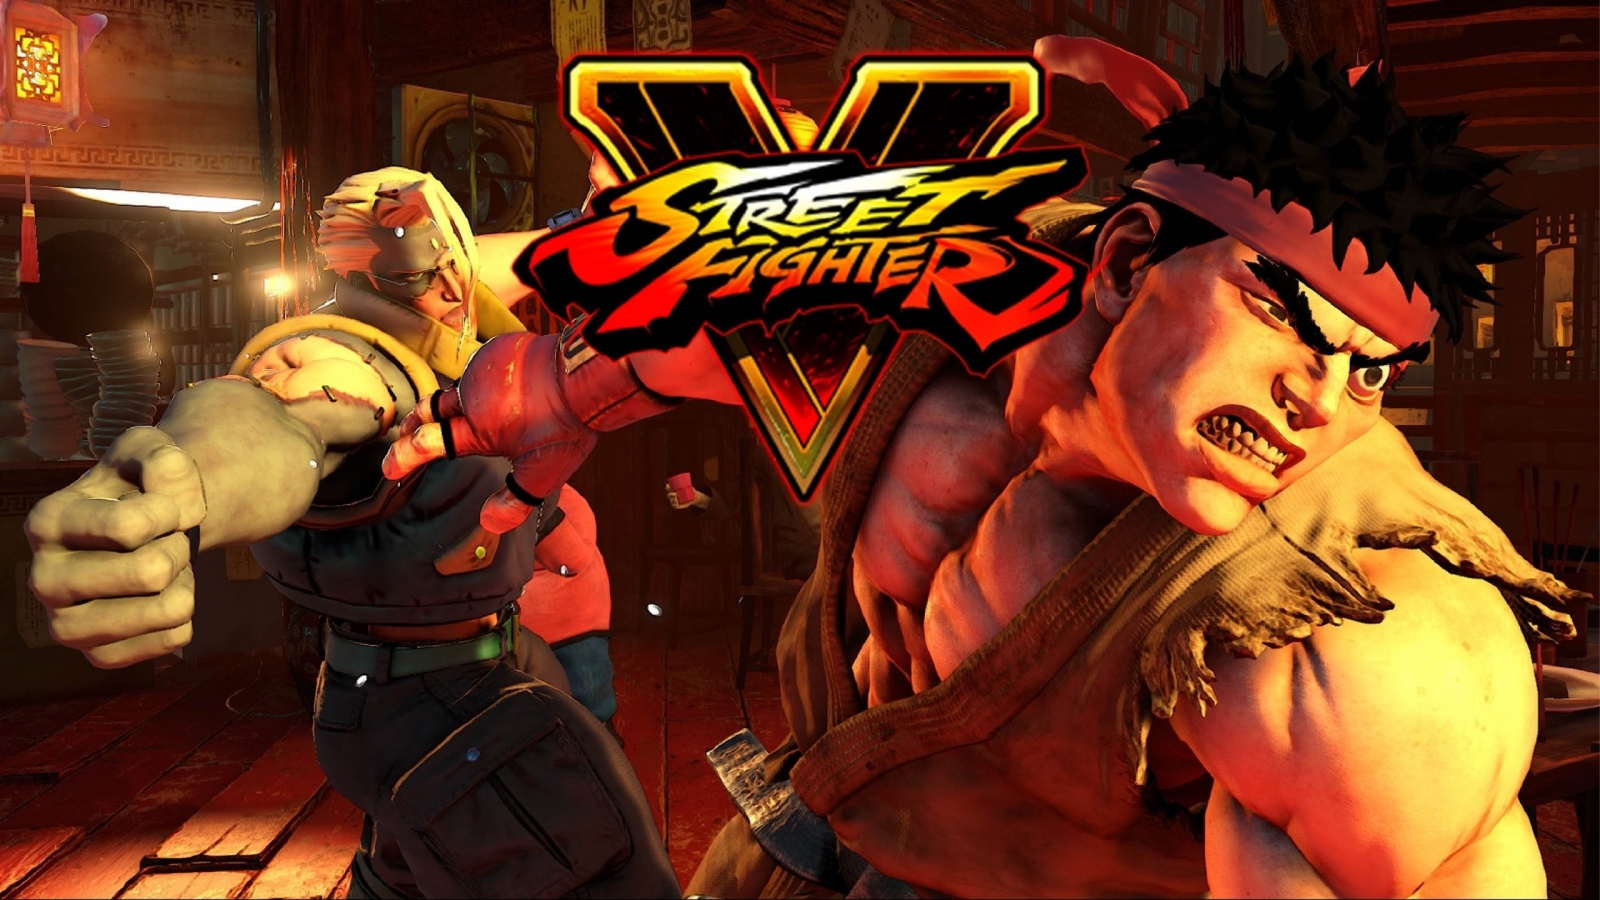 Street Fighter V Poster for 1600 x 900 HDTV resolution